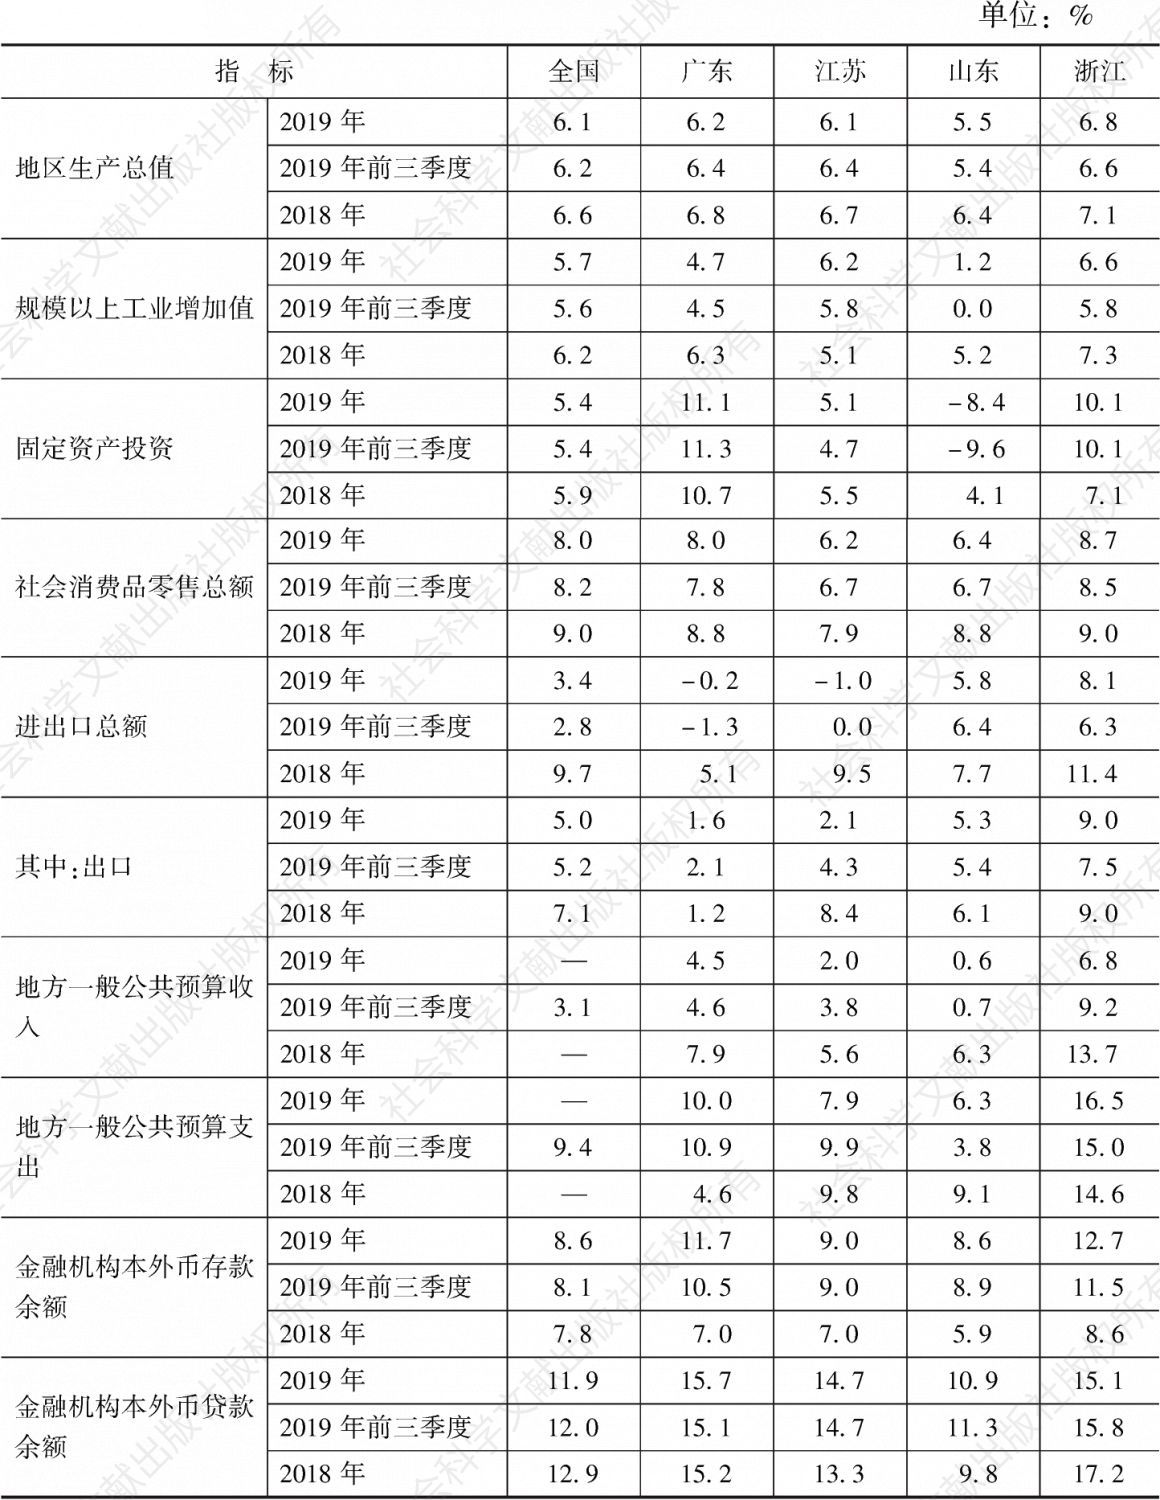 表2 2019年全国和粤苏鲁浙主要经济指标增速对比情况